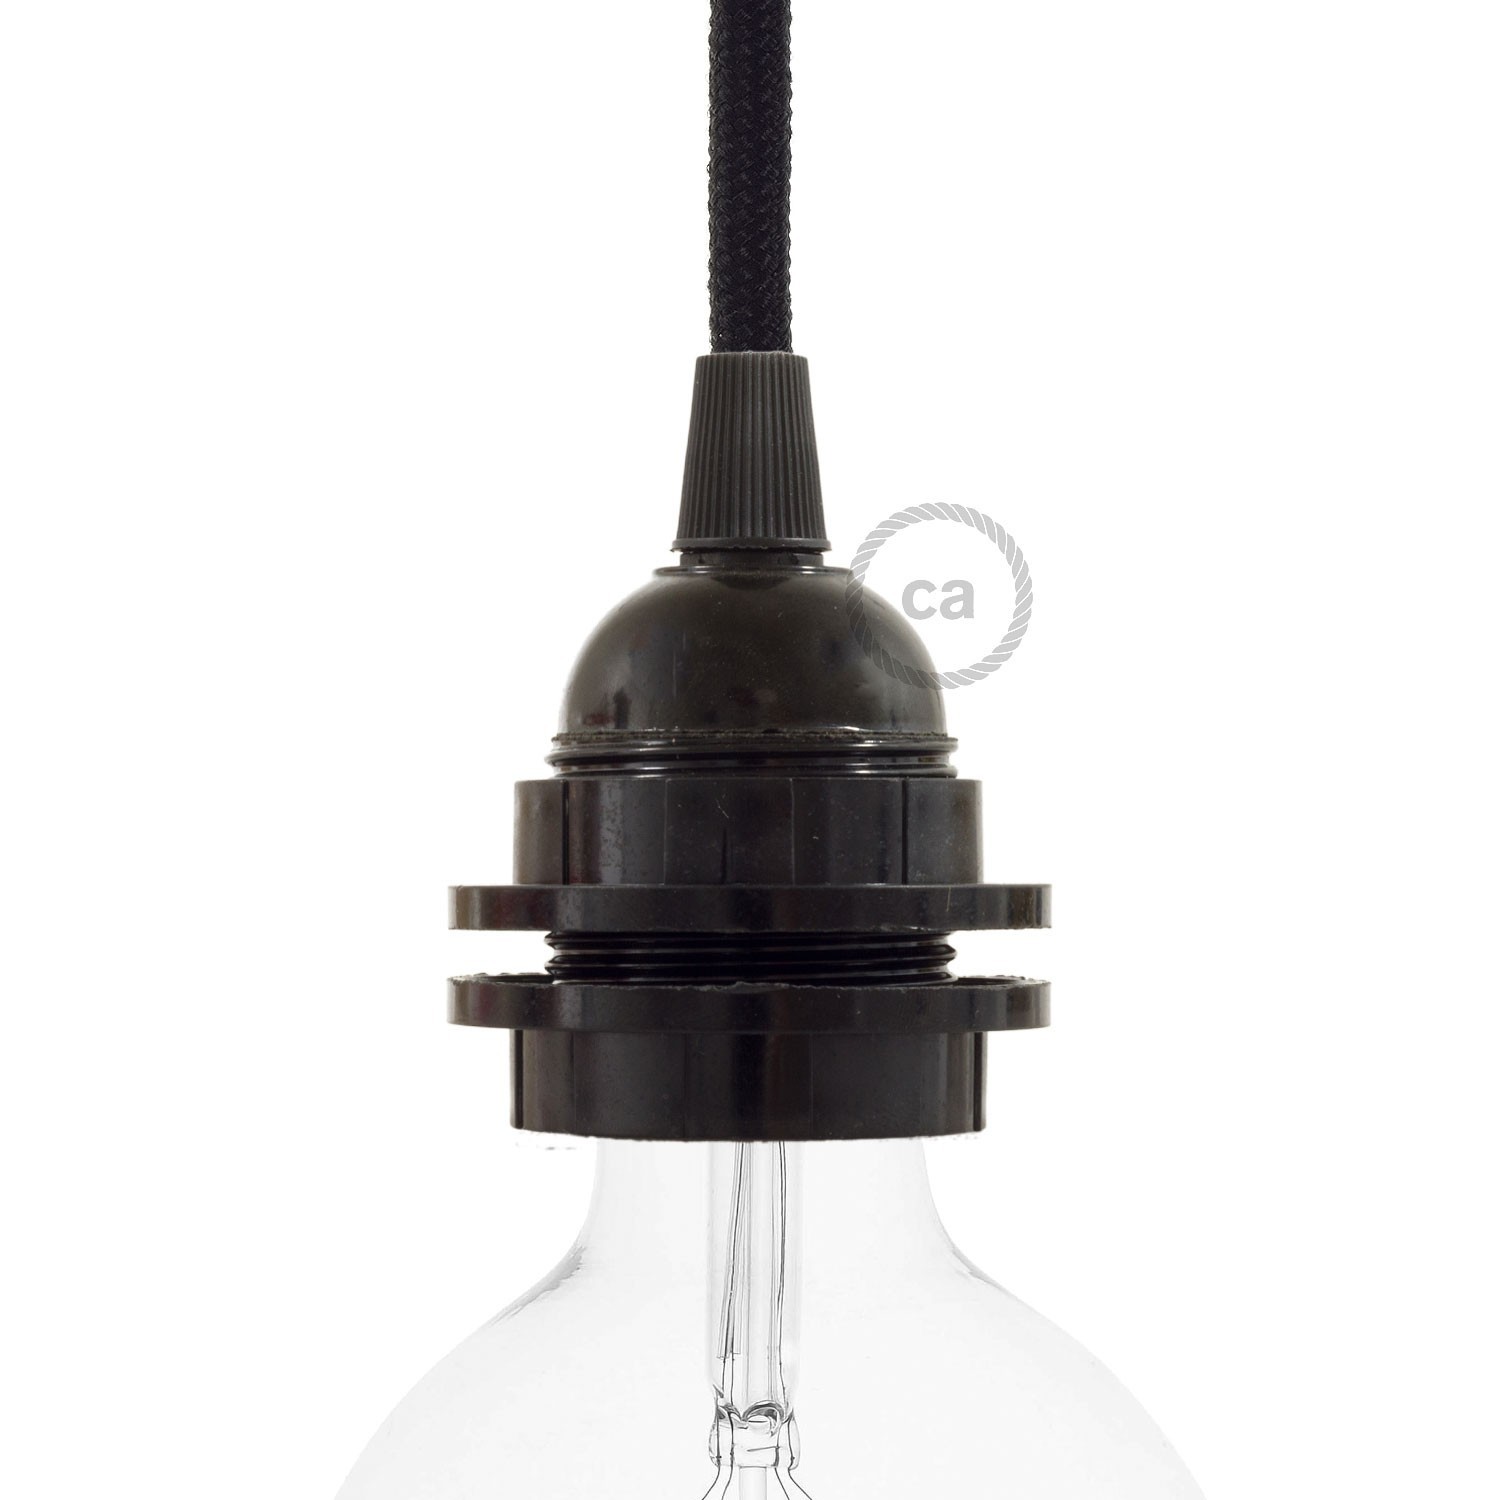 Double ferrule bakelite E27 lamp holder kit for lampshade